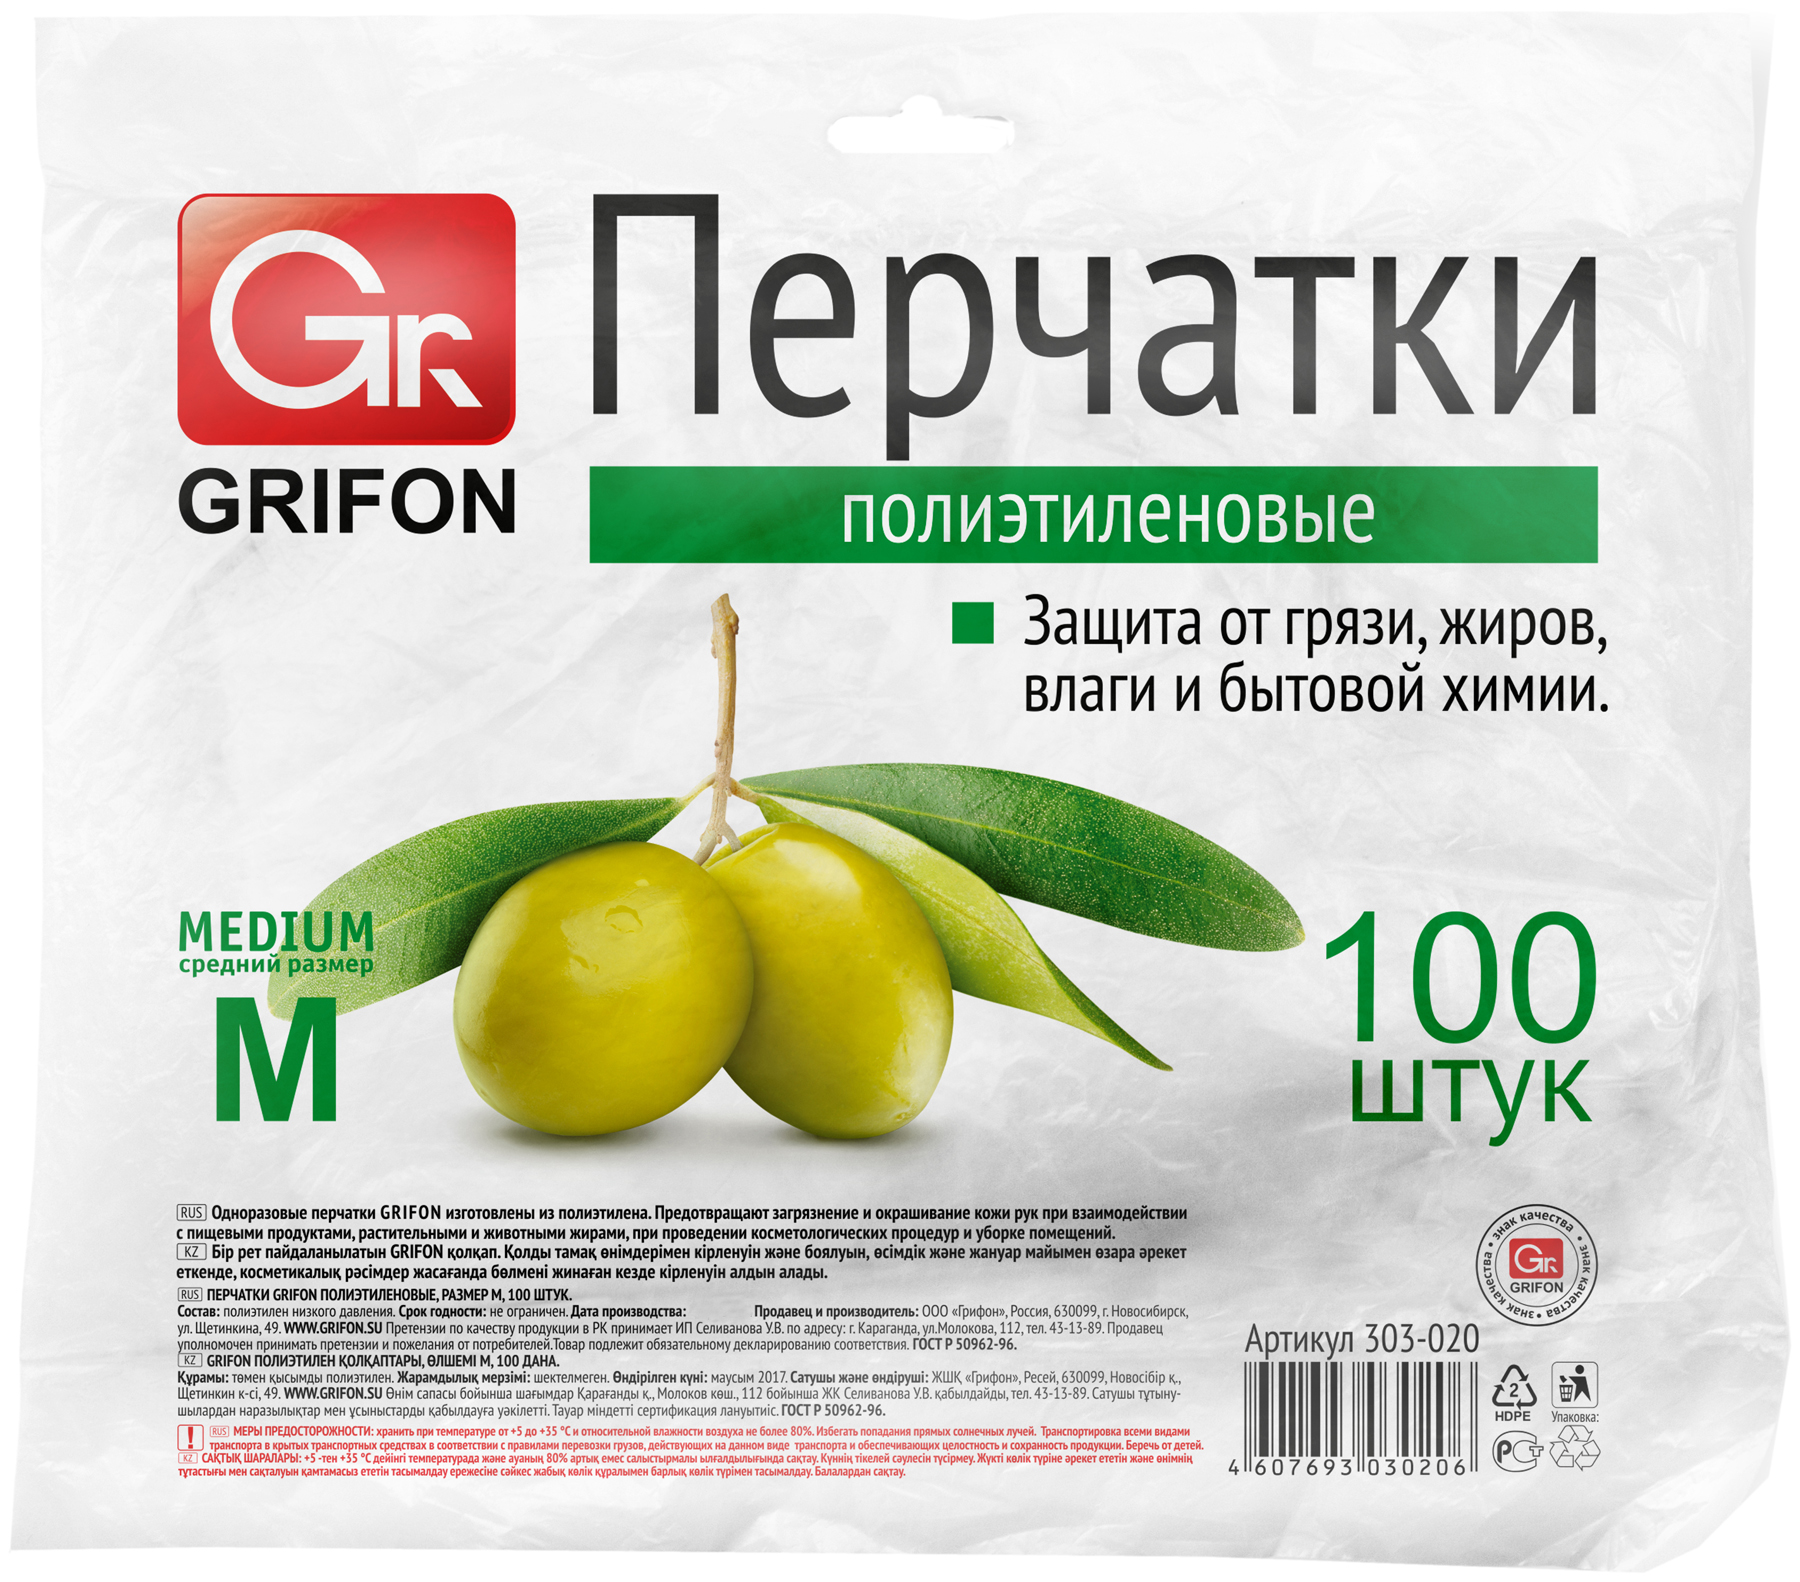 Перчатки grifon полиэтиленовые р. m, 100 шт. в п/эт упаковке